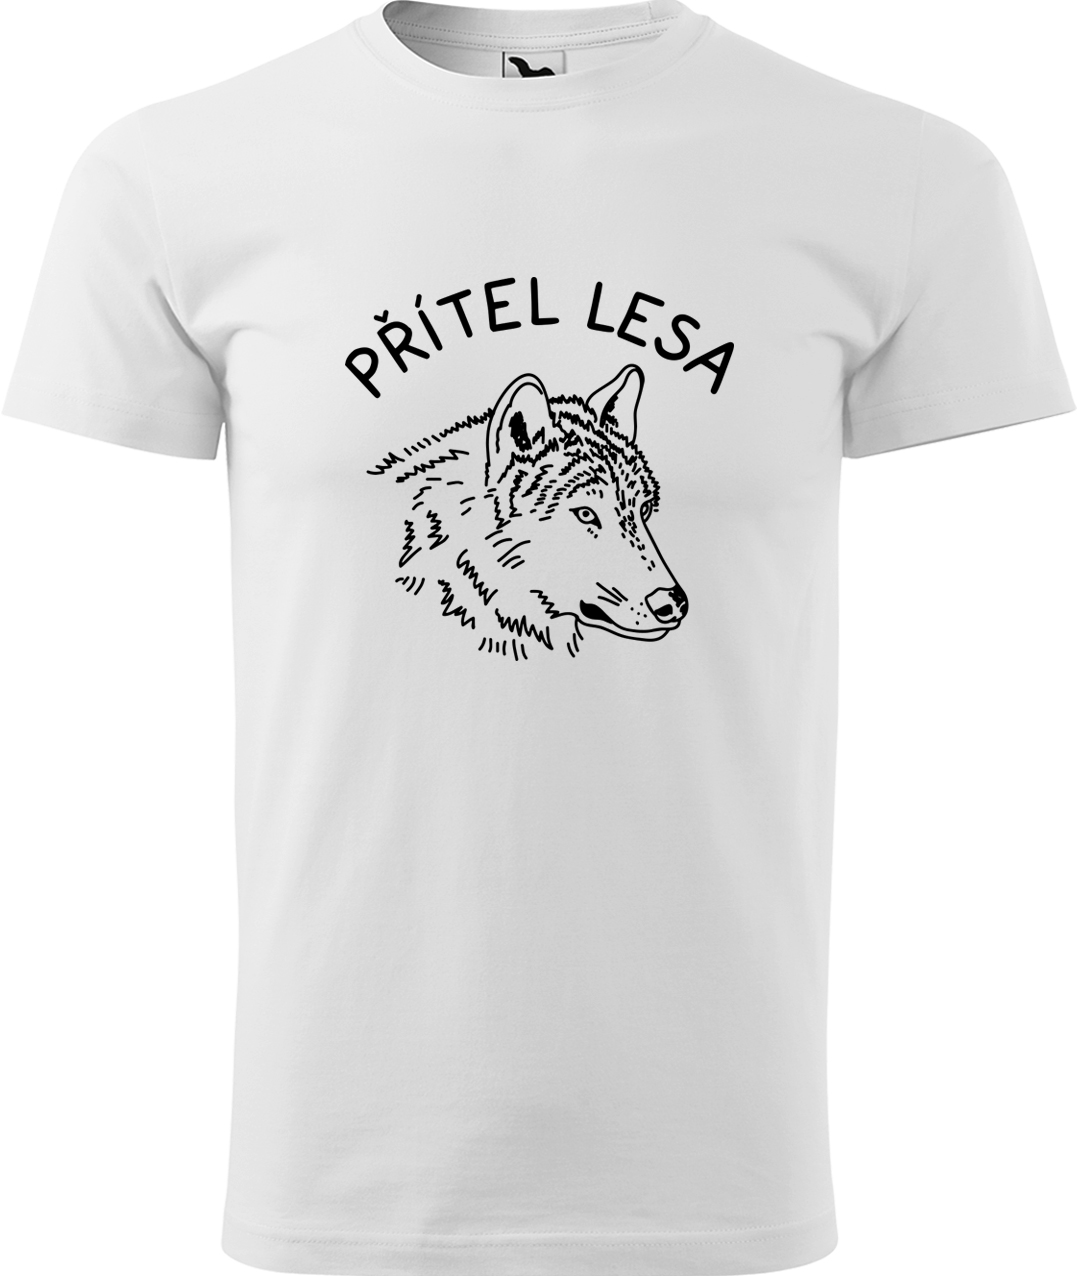 Pánské tričko s vlkem - Přítel lesa Velikost: 3XL, Barva: Bílá (00), Střih: pánský